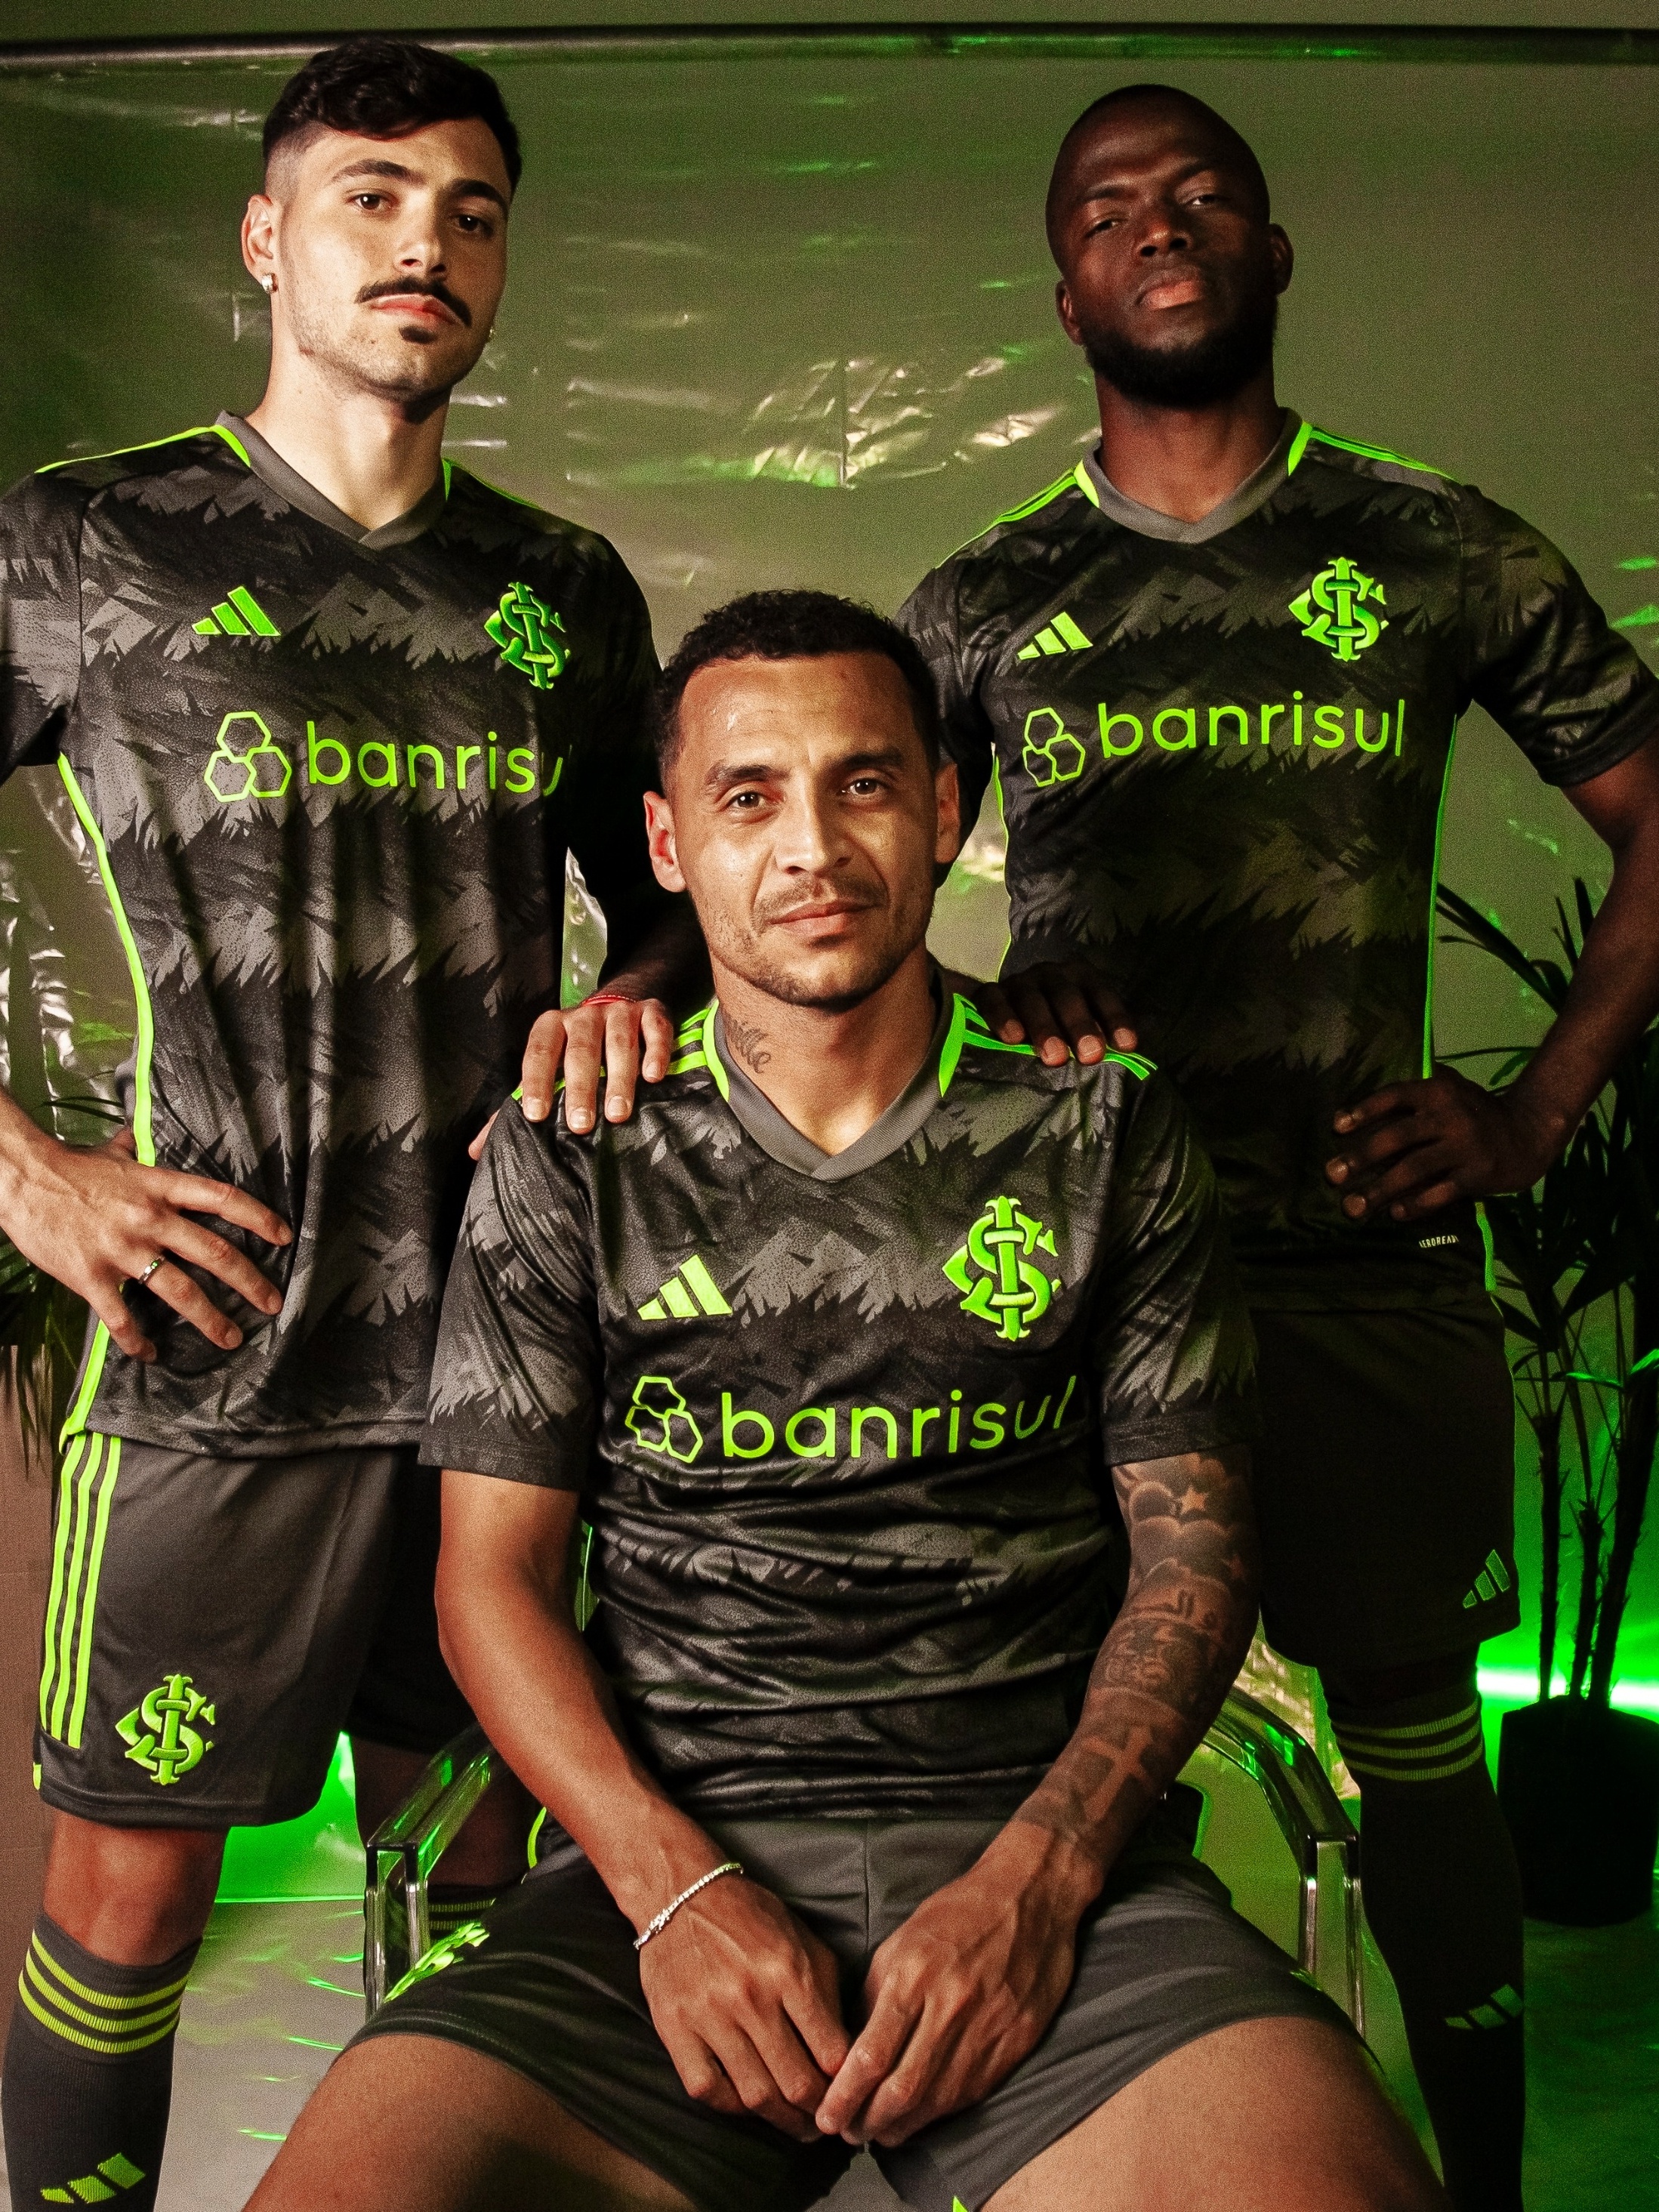 Inter lança terceira camisa na cor cinza com detalhes em verde; veja